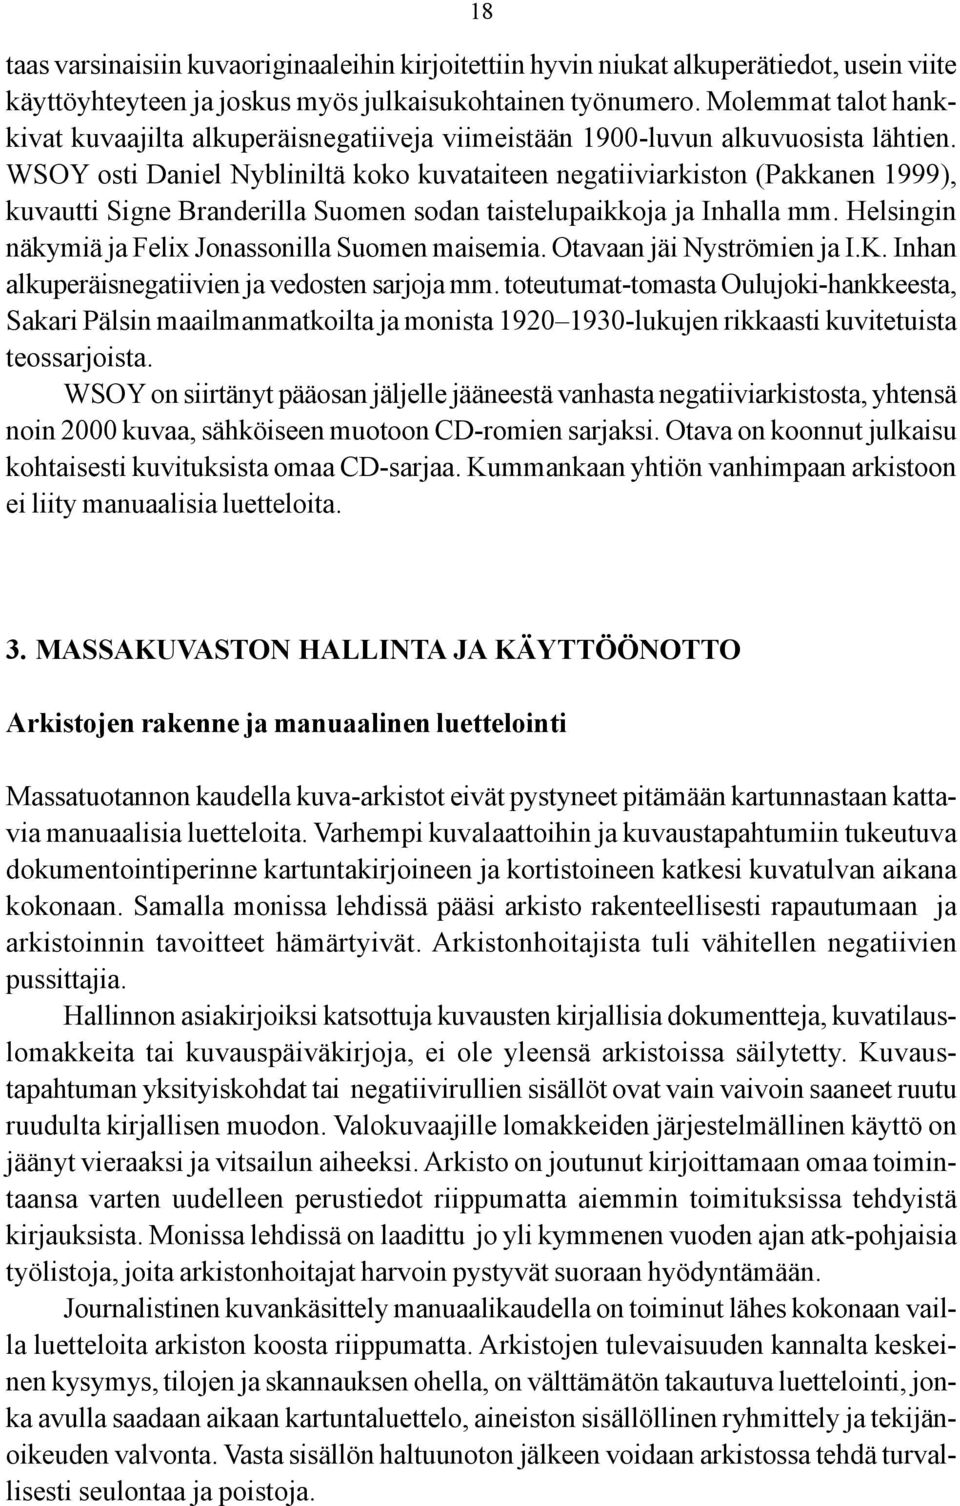 WSOY osti Daniel Nybliniltä koko kuvataiteen negatiiviarkiston (Pakkanen 1999), kuvautti Signe Branderilla Suomen sodan taistelupaikkoja ja Inhalla mm.